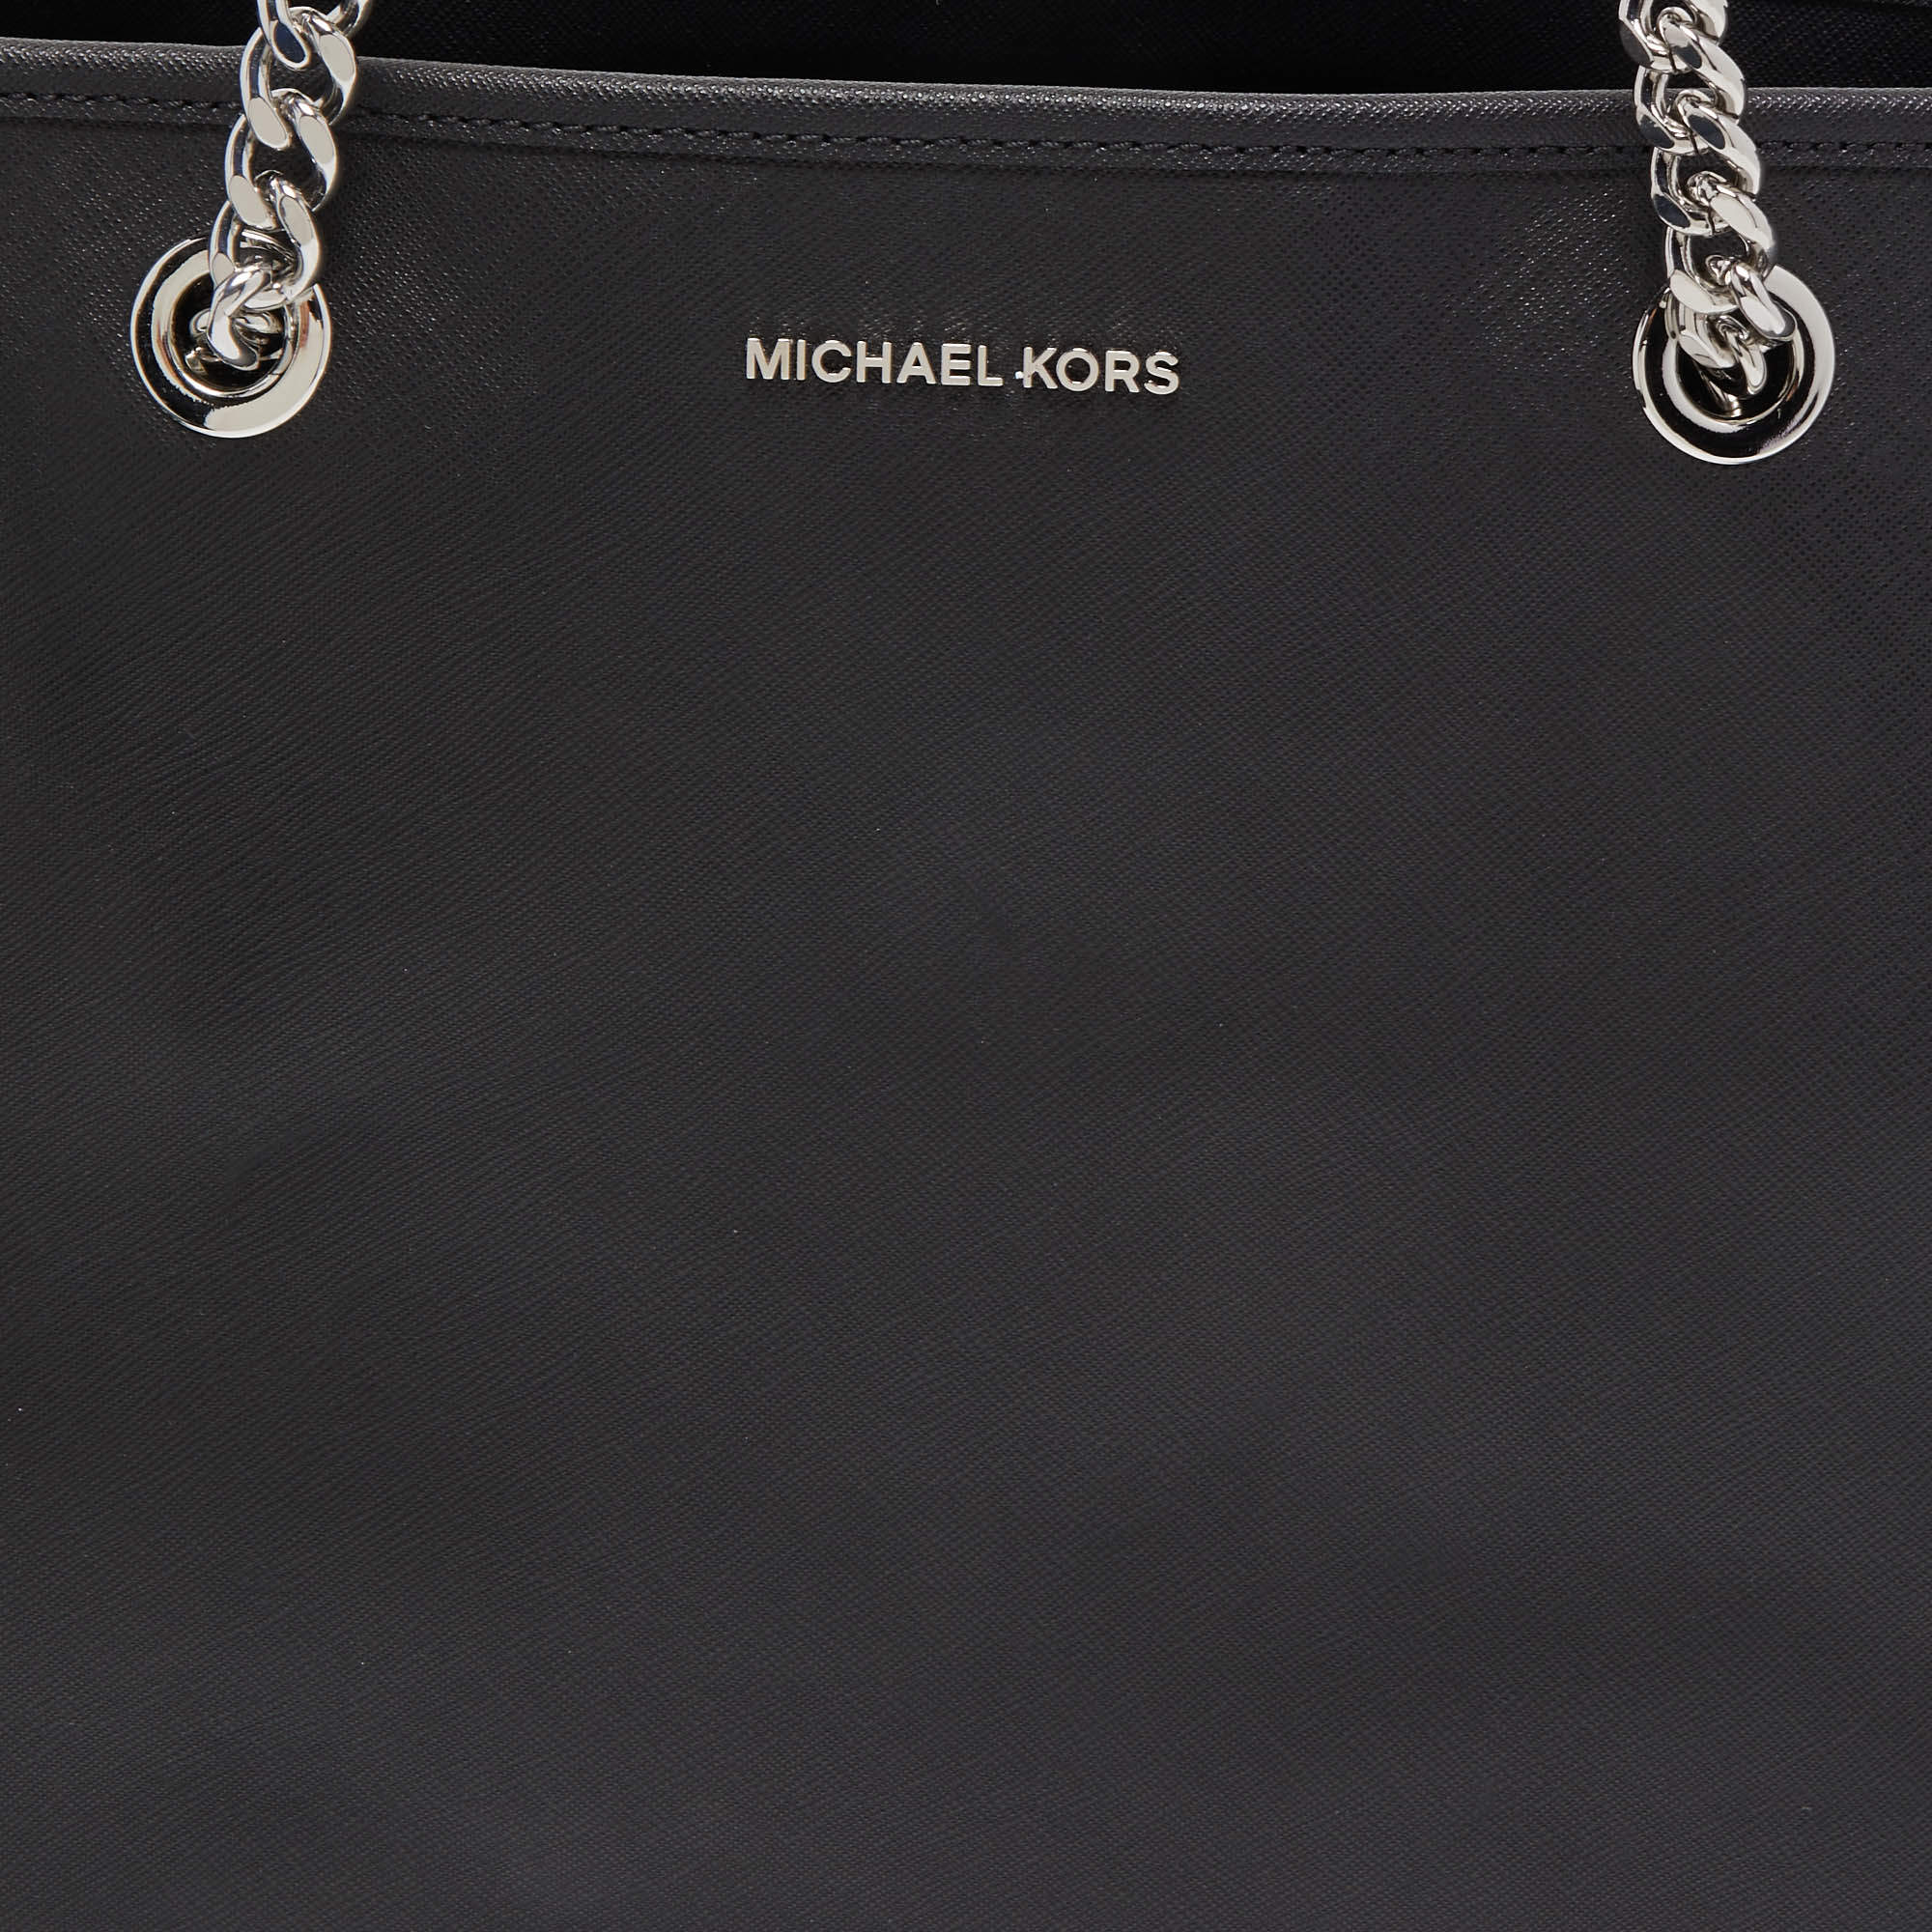 Totes bags Michael Kors - Jet Set Travel Chain medium tote - 30S6GJ8T2L085